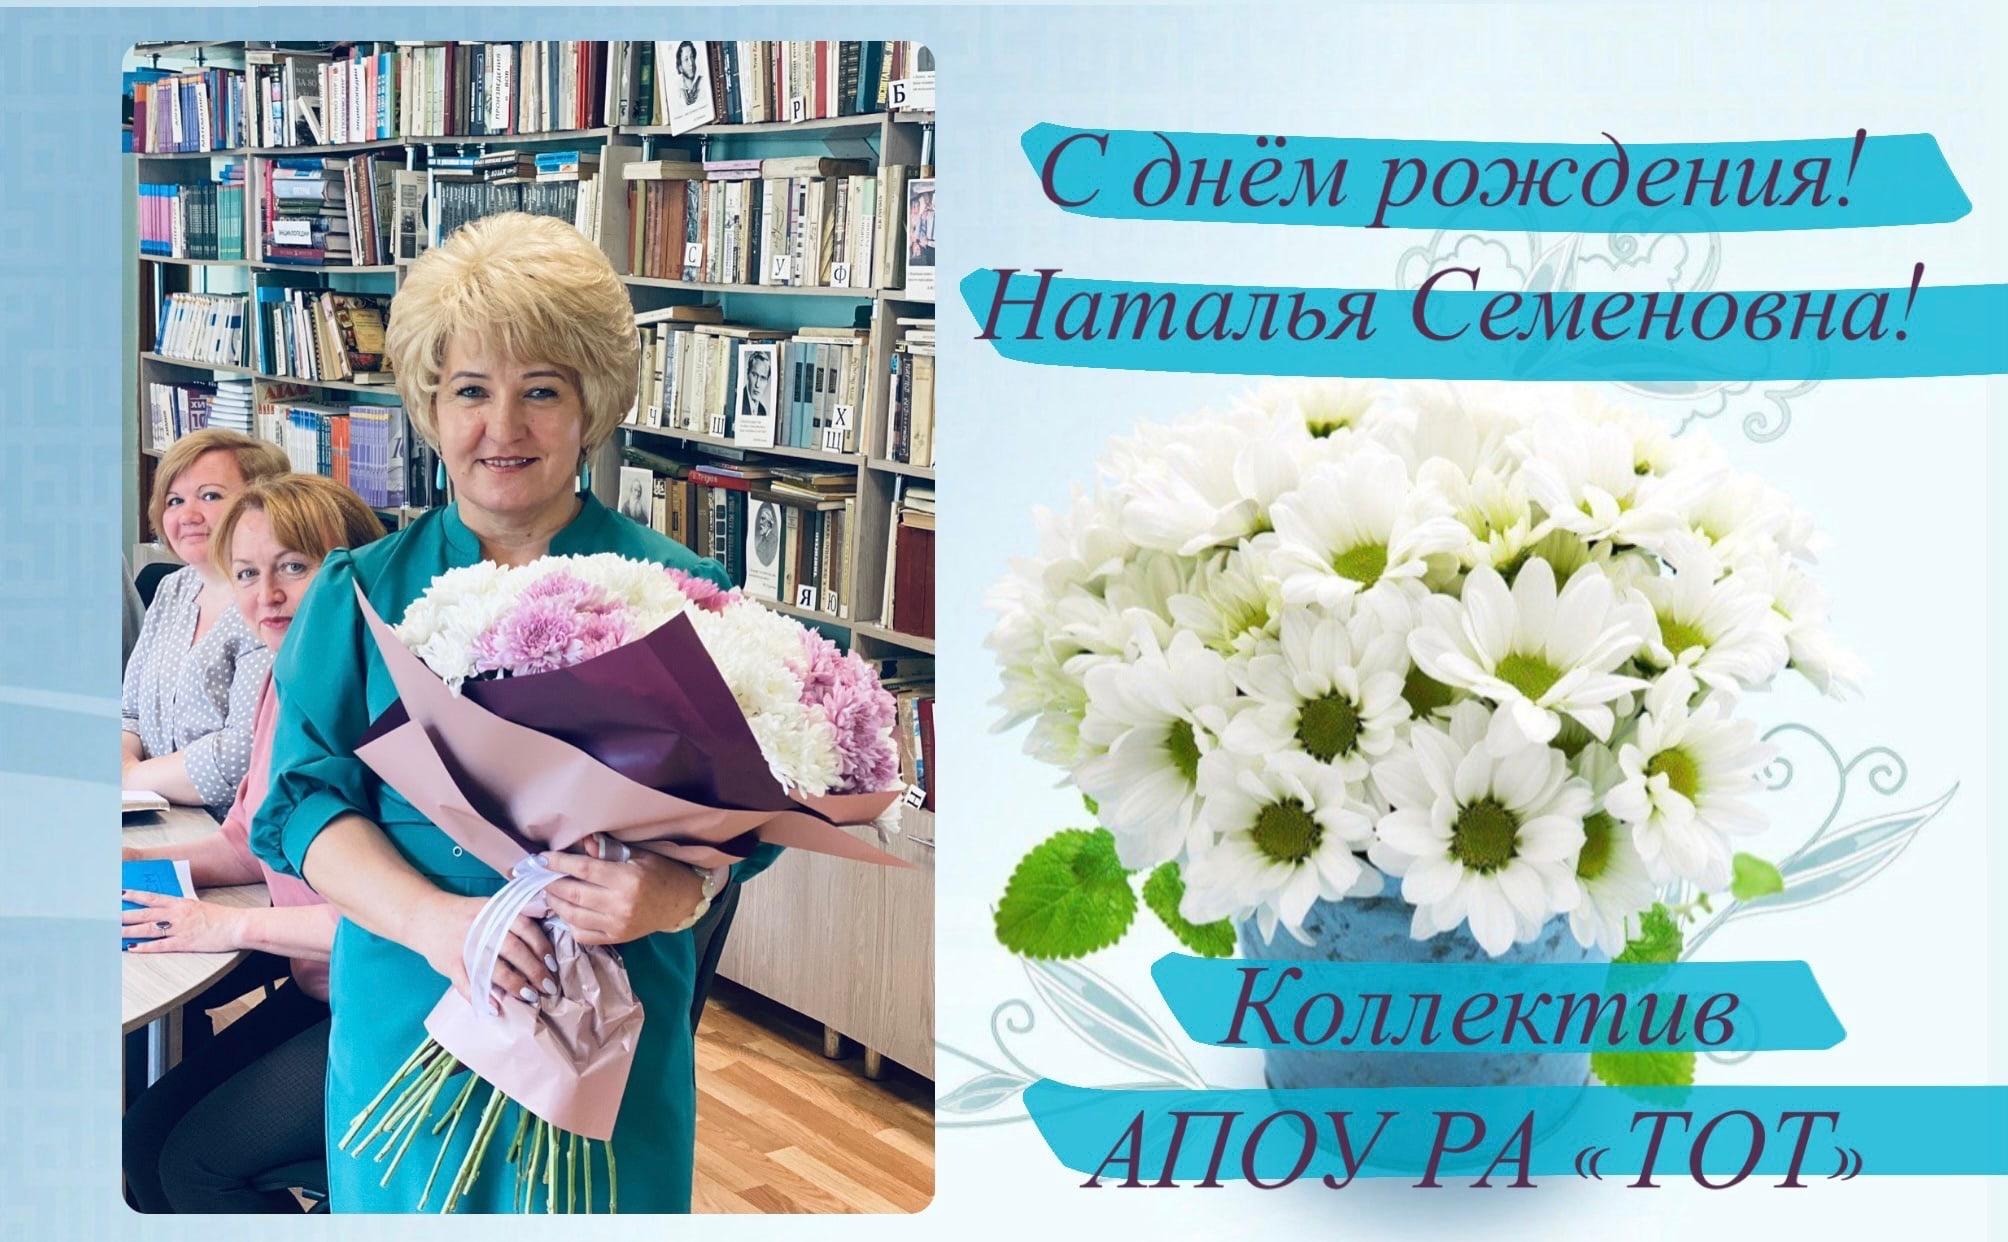 Лукьянова Наталья Семеновна